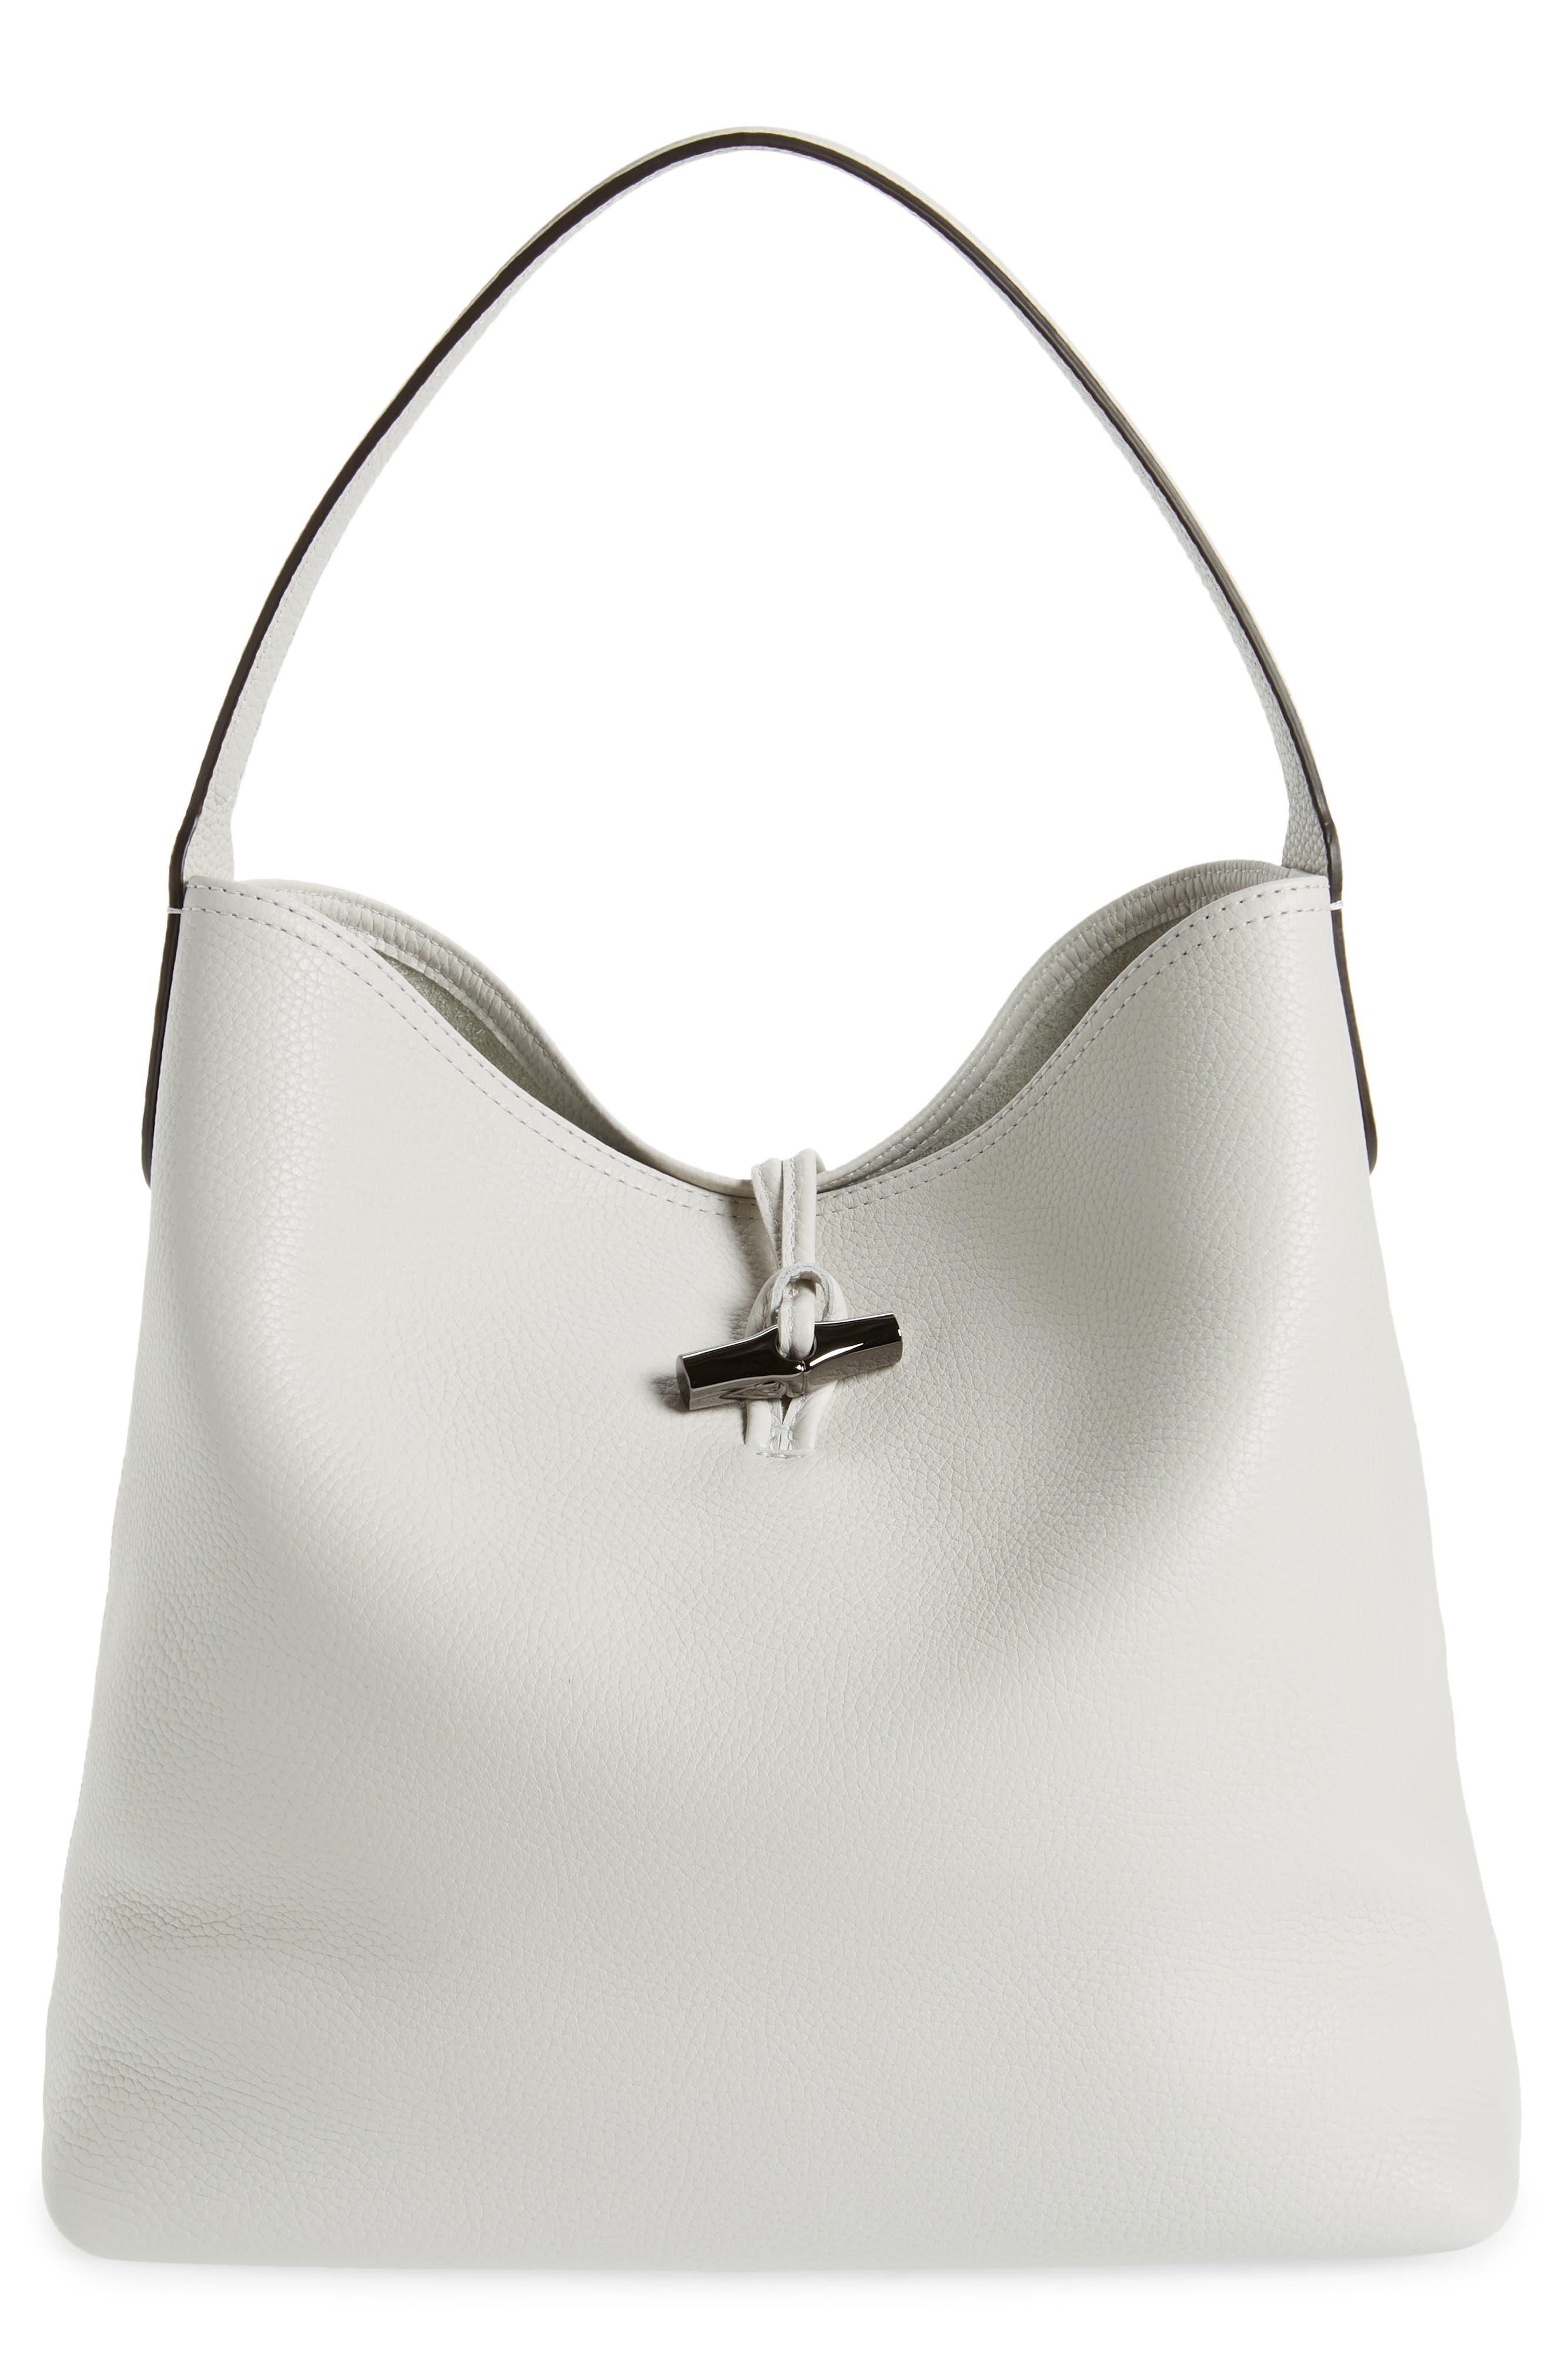 Longchamp Roseau Essential Hobo Bag in Gray